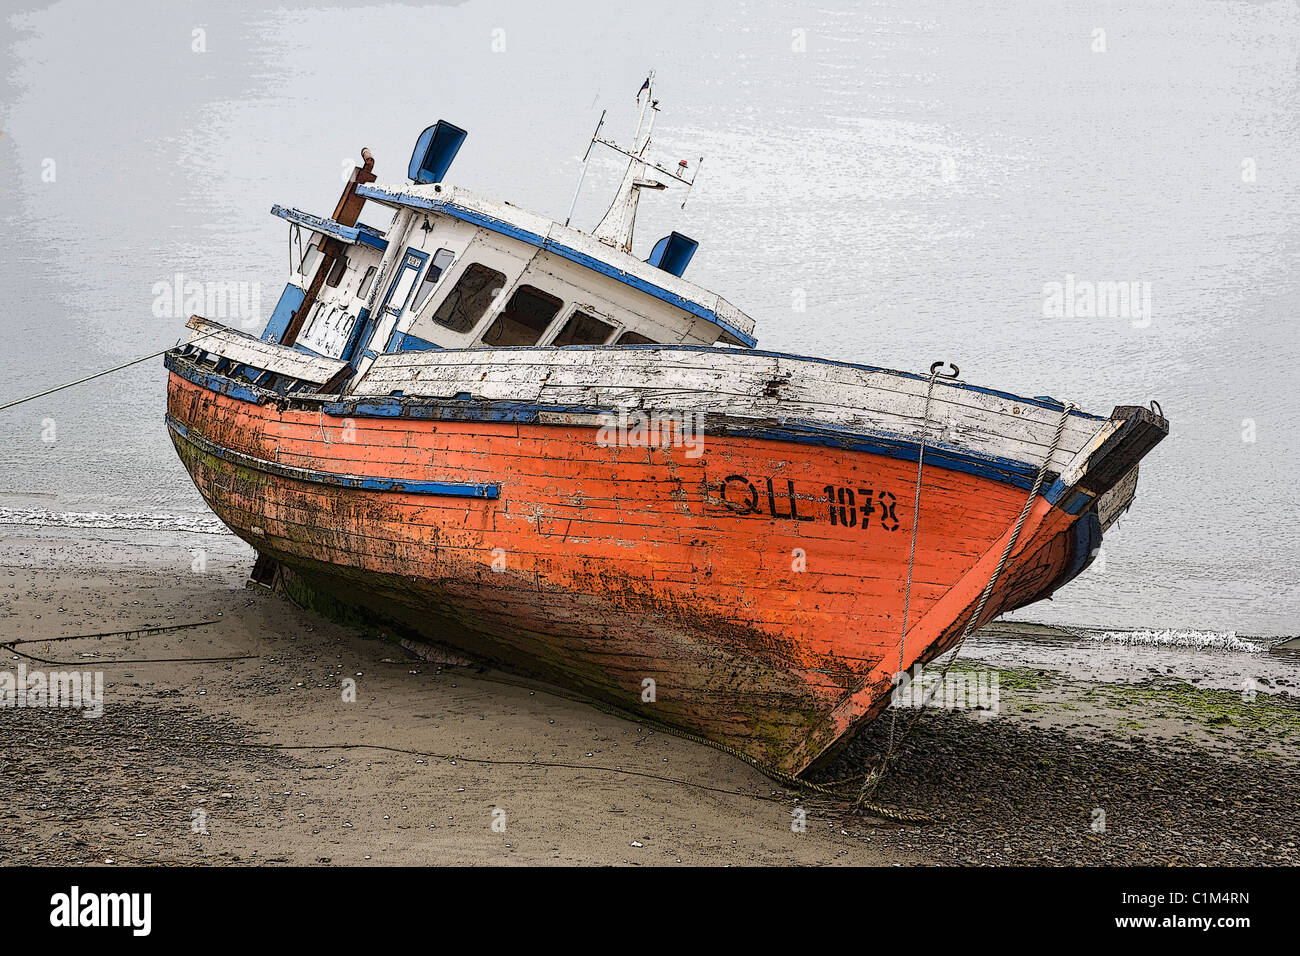 L'île de Chiloé, Posterized image d'un bateau de pêche échoués, Chili Banque D'Images